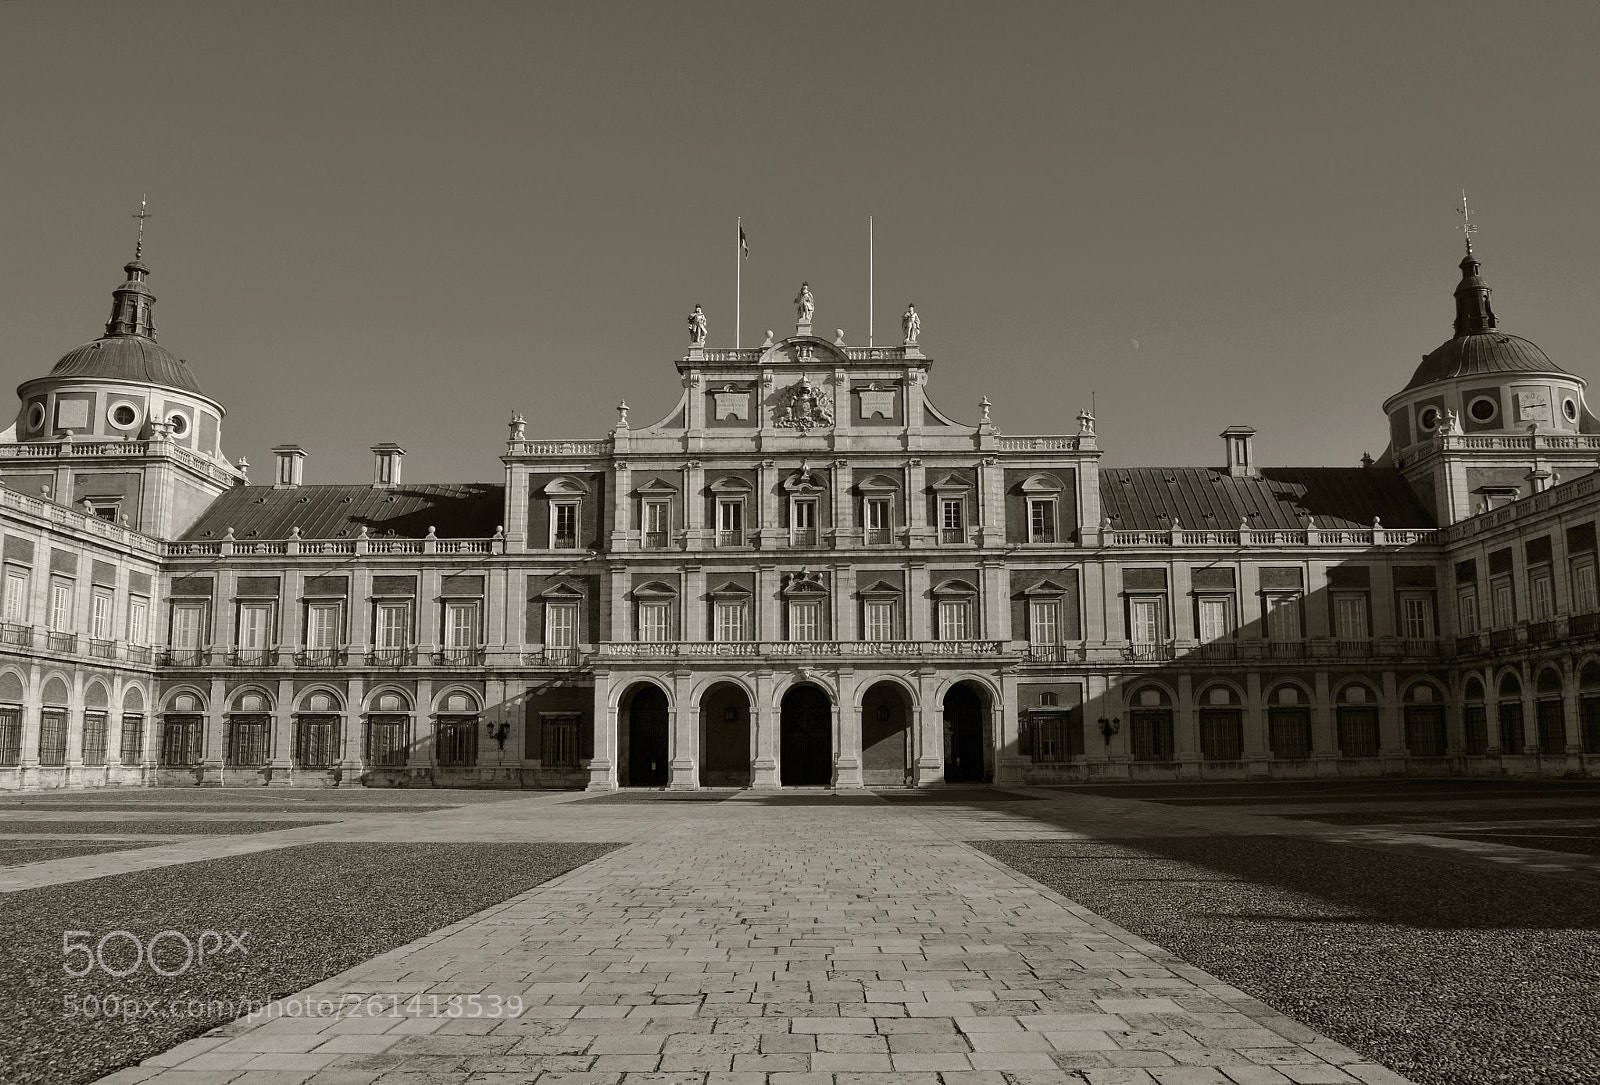 Nikon D3100 sample photo. Palacio real de aranjuez photography